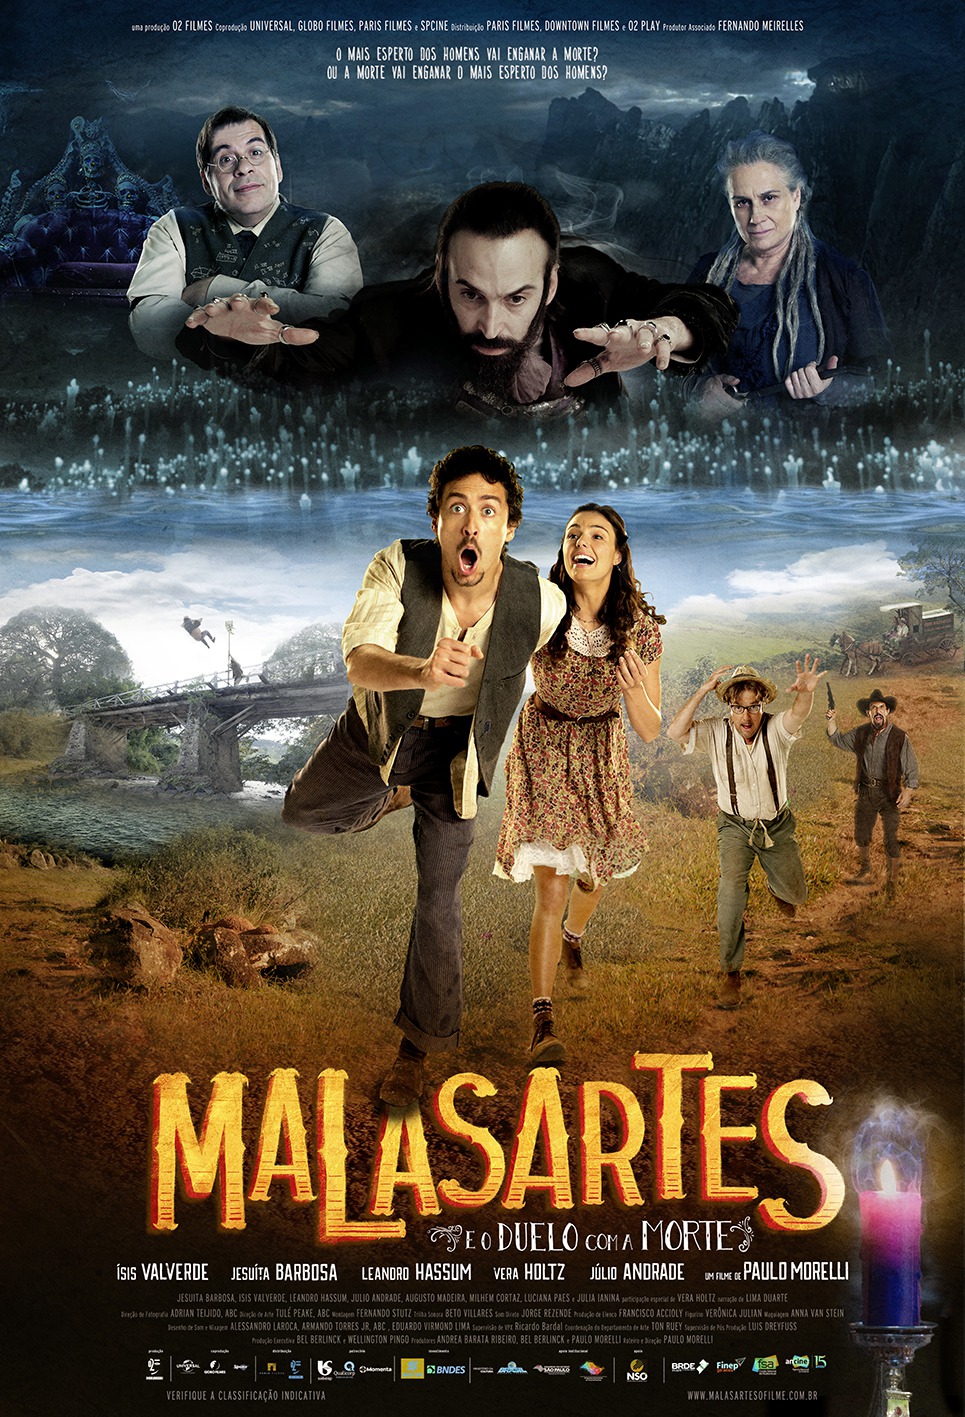 Extra Large Movie Poster Image for Malasartes e o Duelo com a Morte 